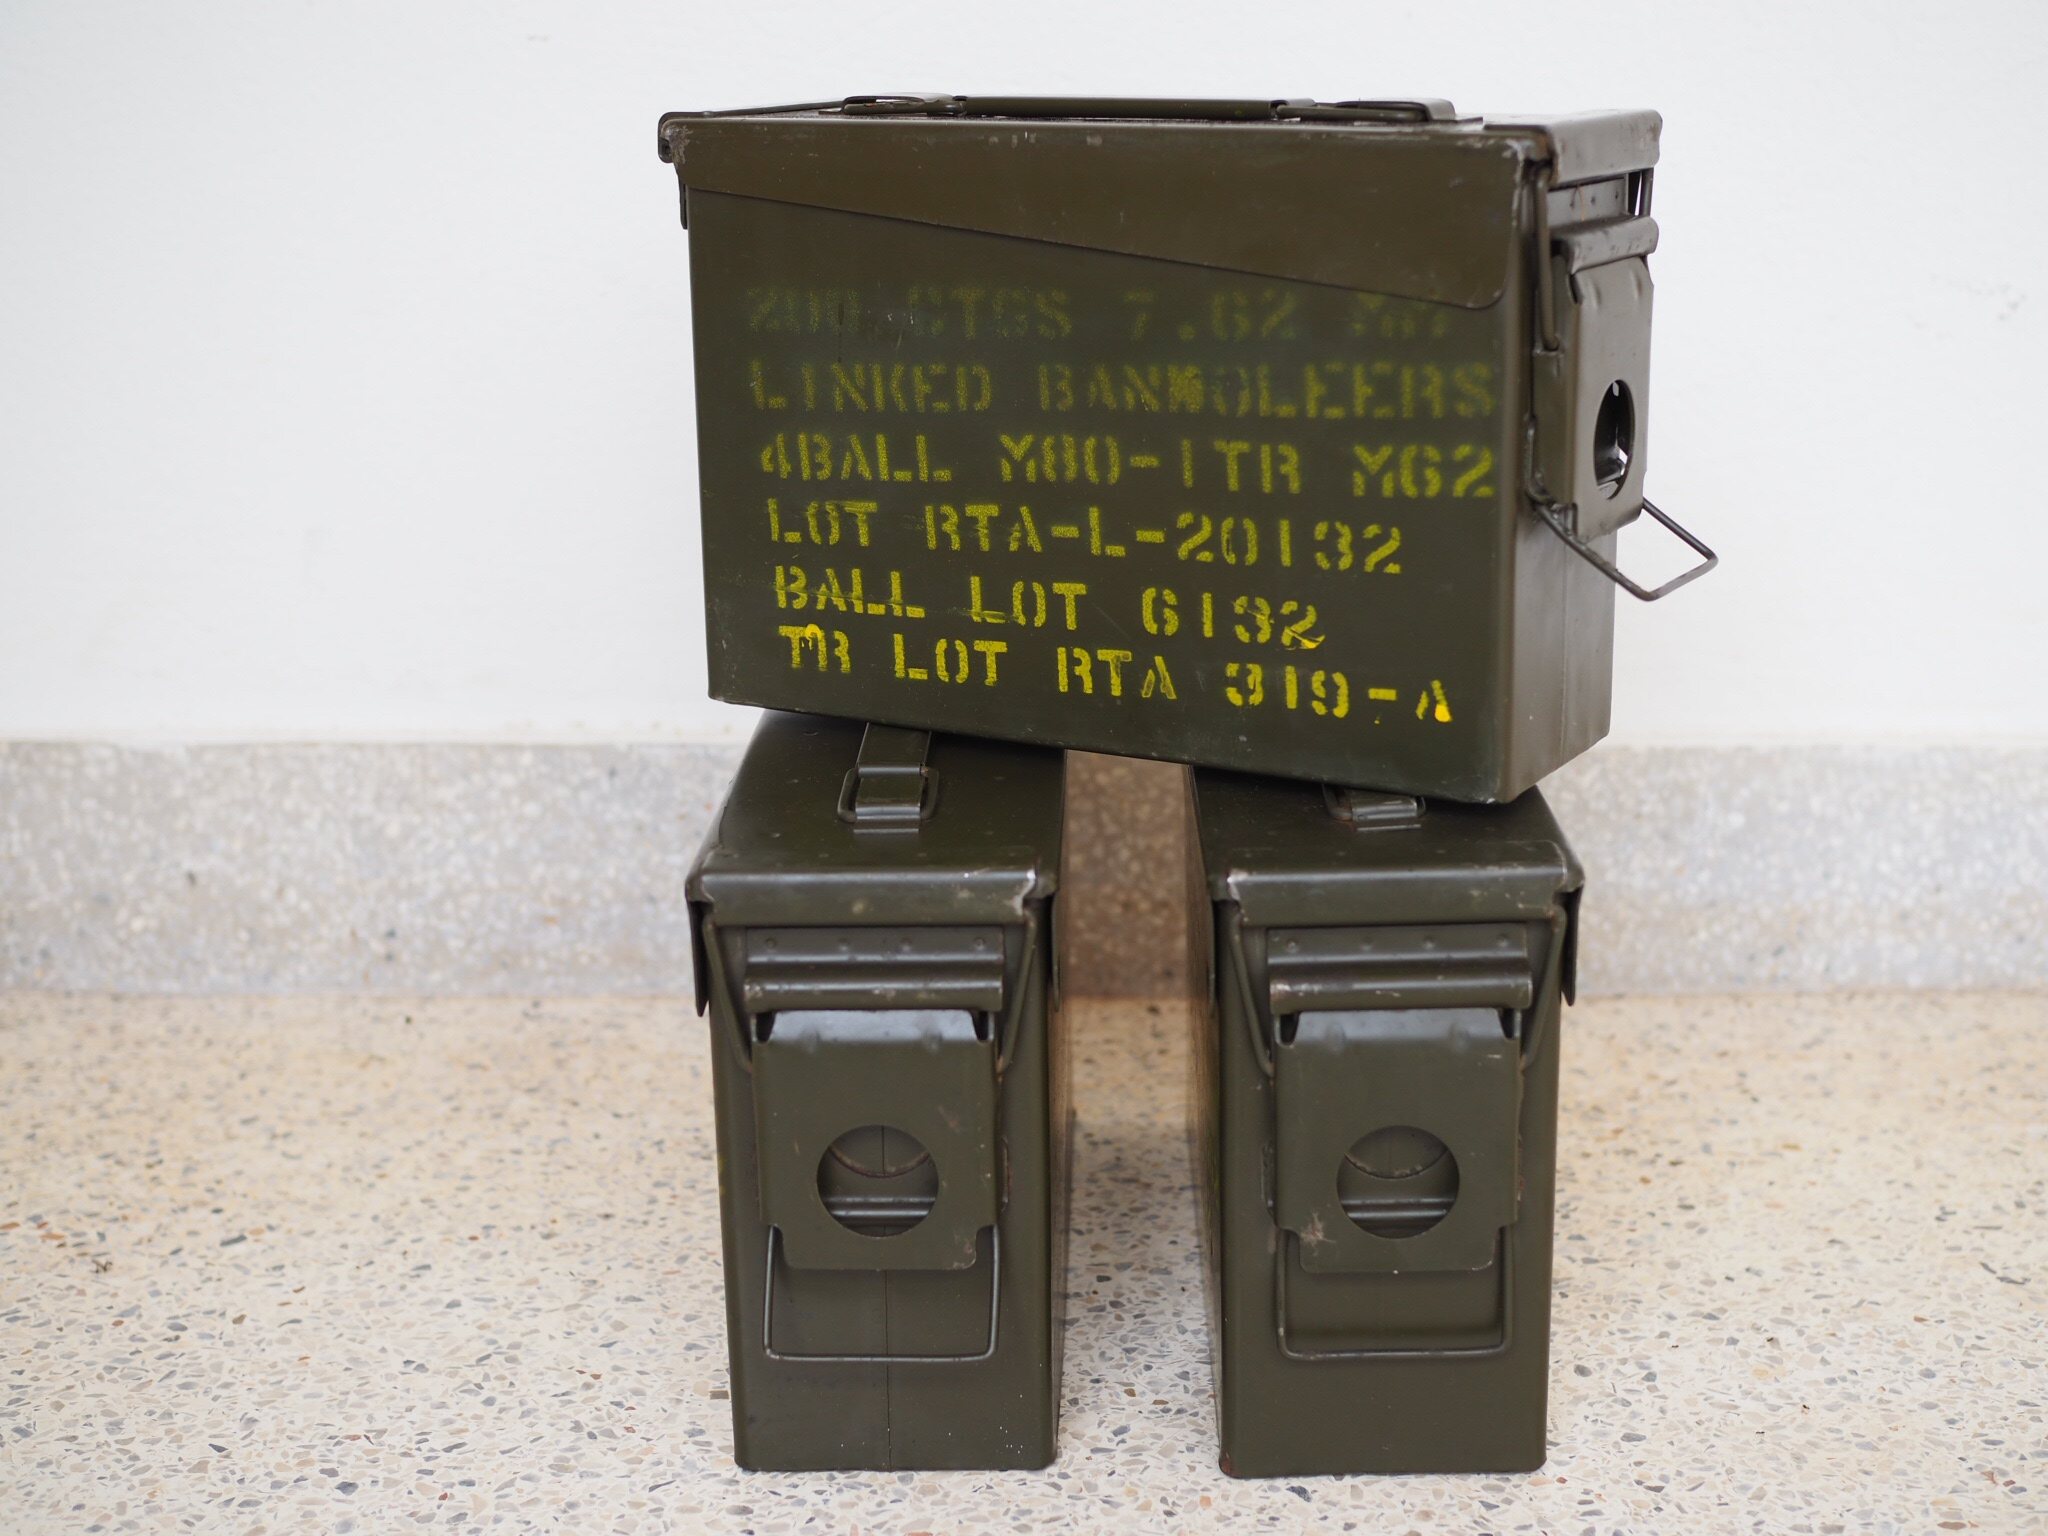 ลังกระสุน ลังกระสุนทหาร กล่องกระสุนปืน กล่องเหล็ก ลังเหล็ก กล่องเครื่องมือช่าง   มีซีลกันน้ำ สนิมน้อย  Ammunition box 1 ทำความสะอาดก่อนส่ง